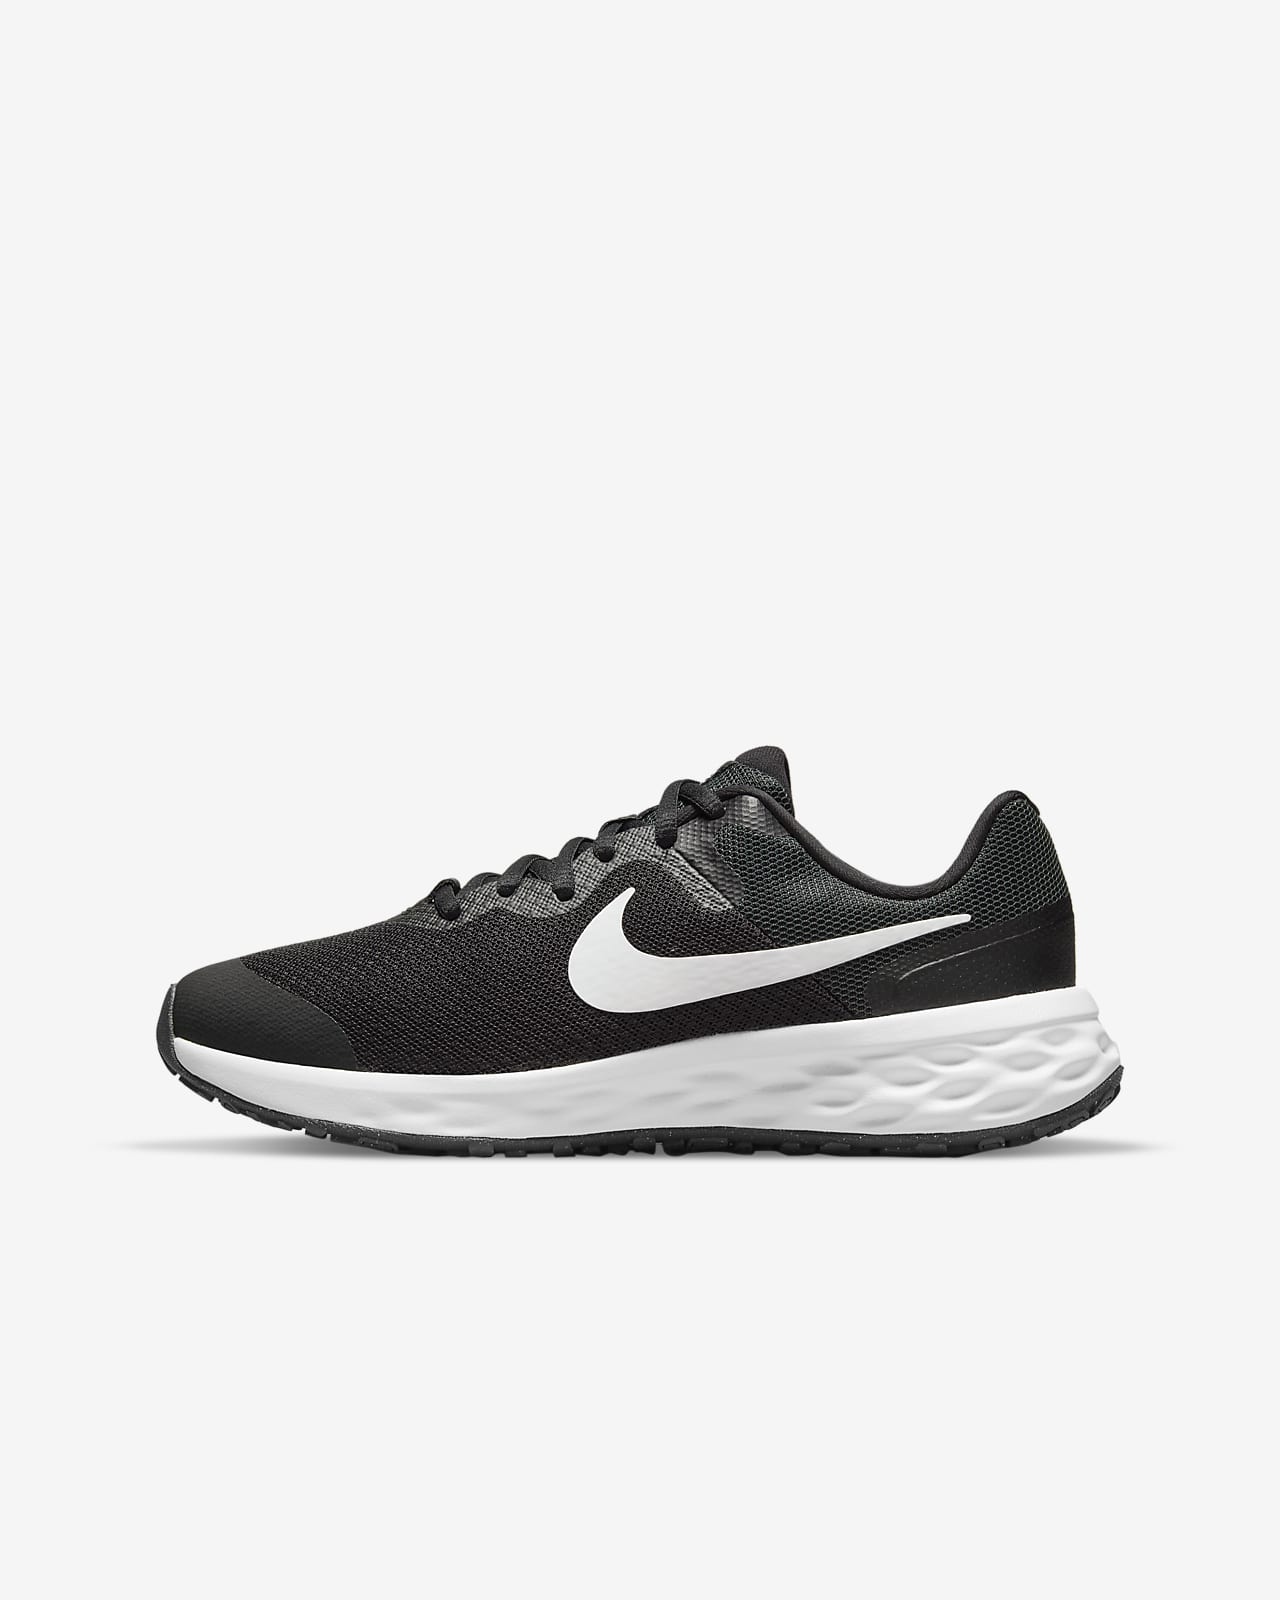 Παπούτσι για τρέξιμο σε δρόμο Nike Revolution 6 για μεγάλα παιδιά